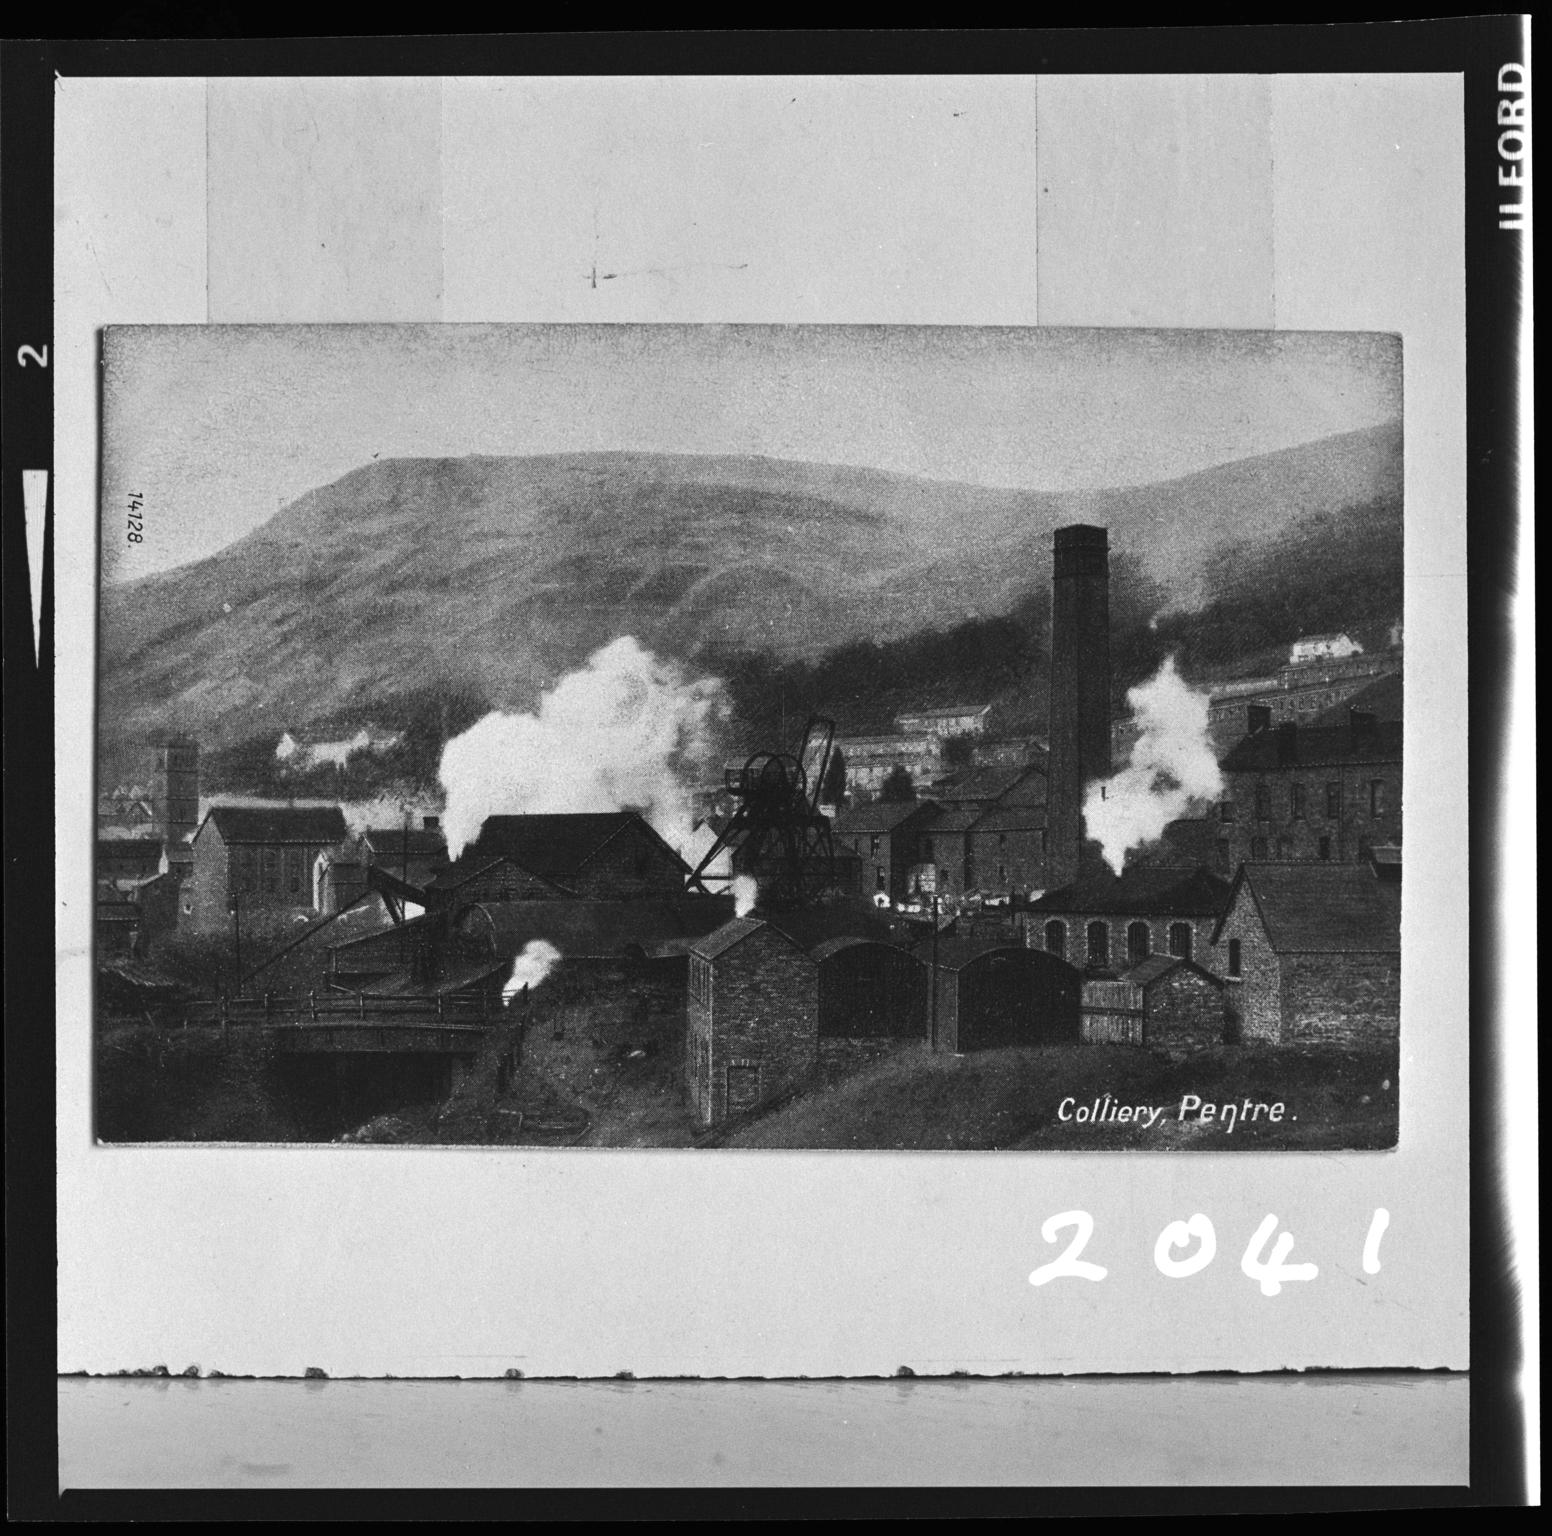 Pentre Colliery, film negative